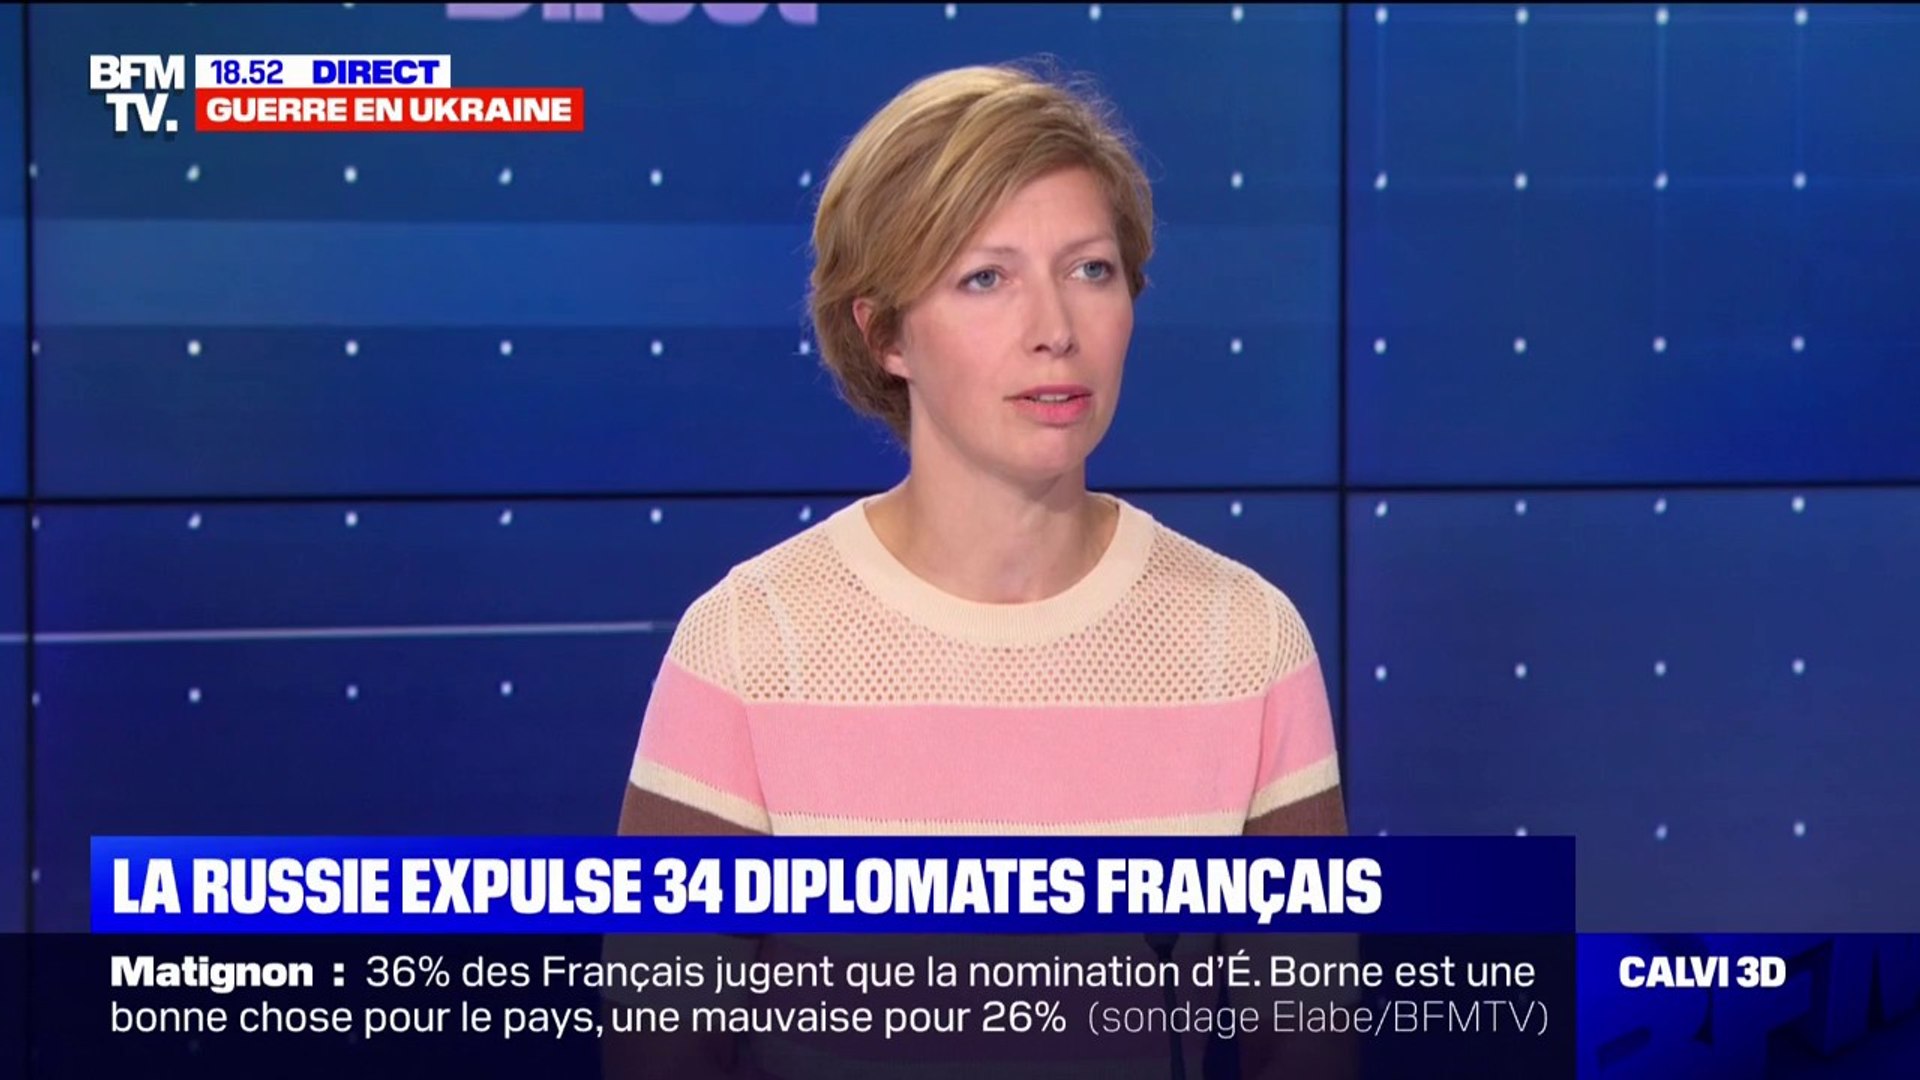 intentionnel Viva Fruité expulsion diplomates français russie otage élite Déplacement